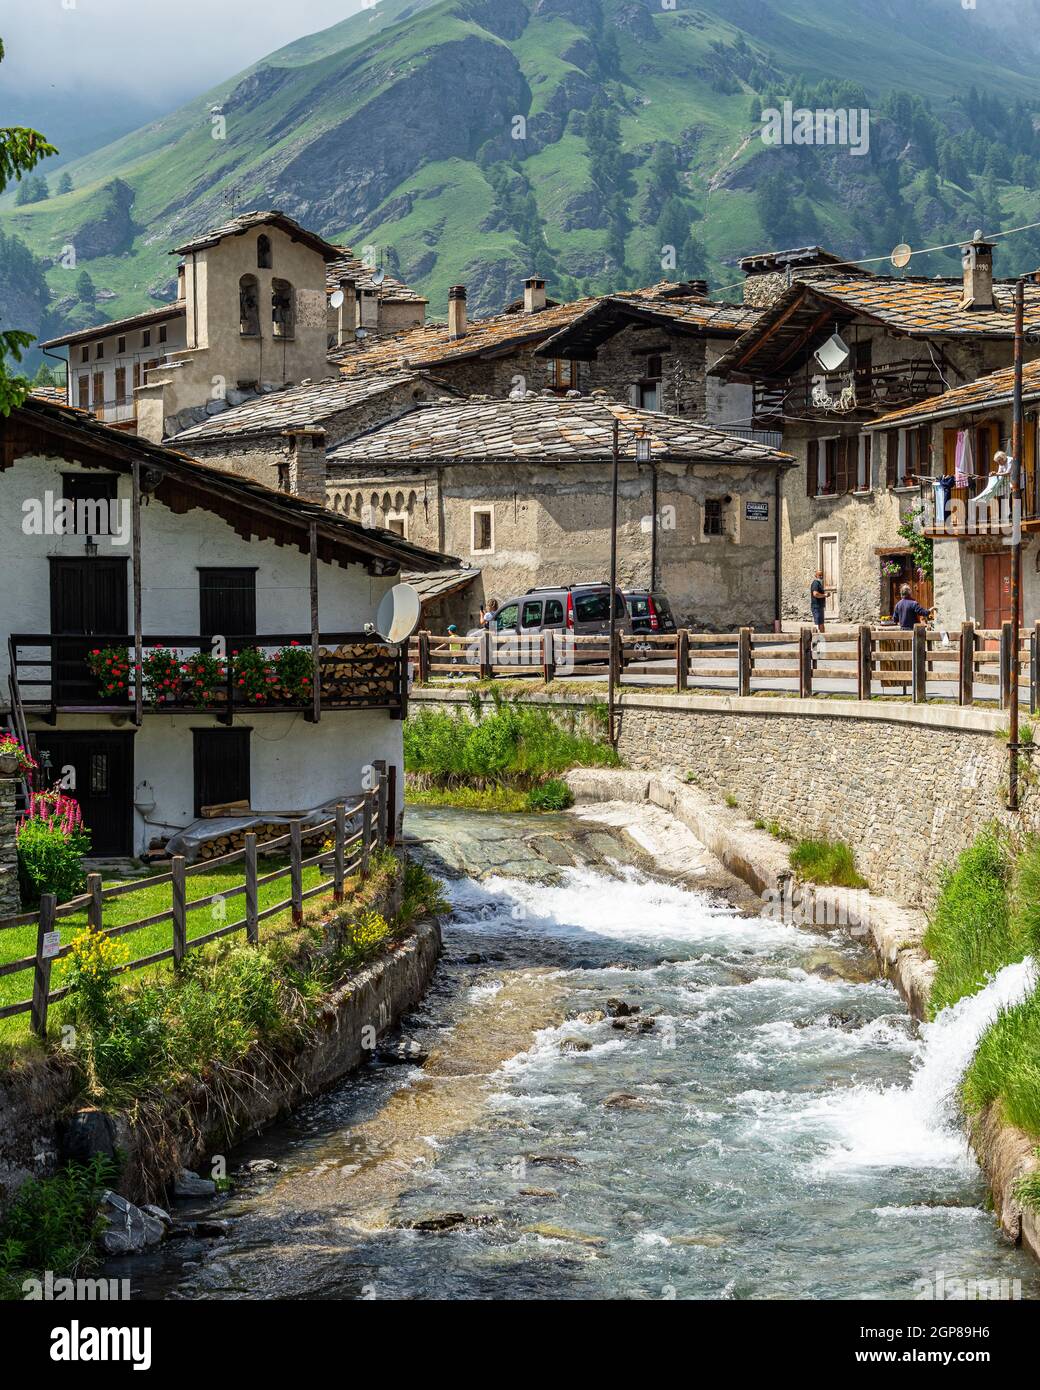 CHIANALE, ITALIEN - 22. Aug 2021: Eine Aufnahme des Dorfes Chianale im Varaita-Tal in der Region Pidemont, Italien Stockfoto